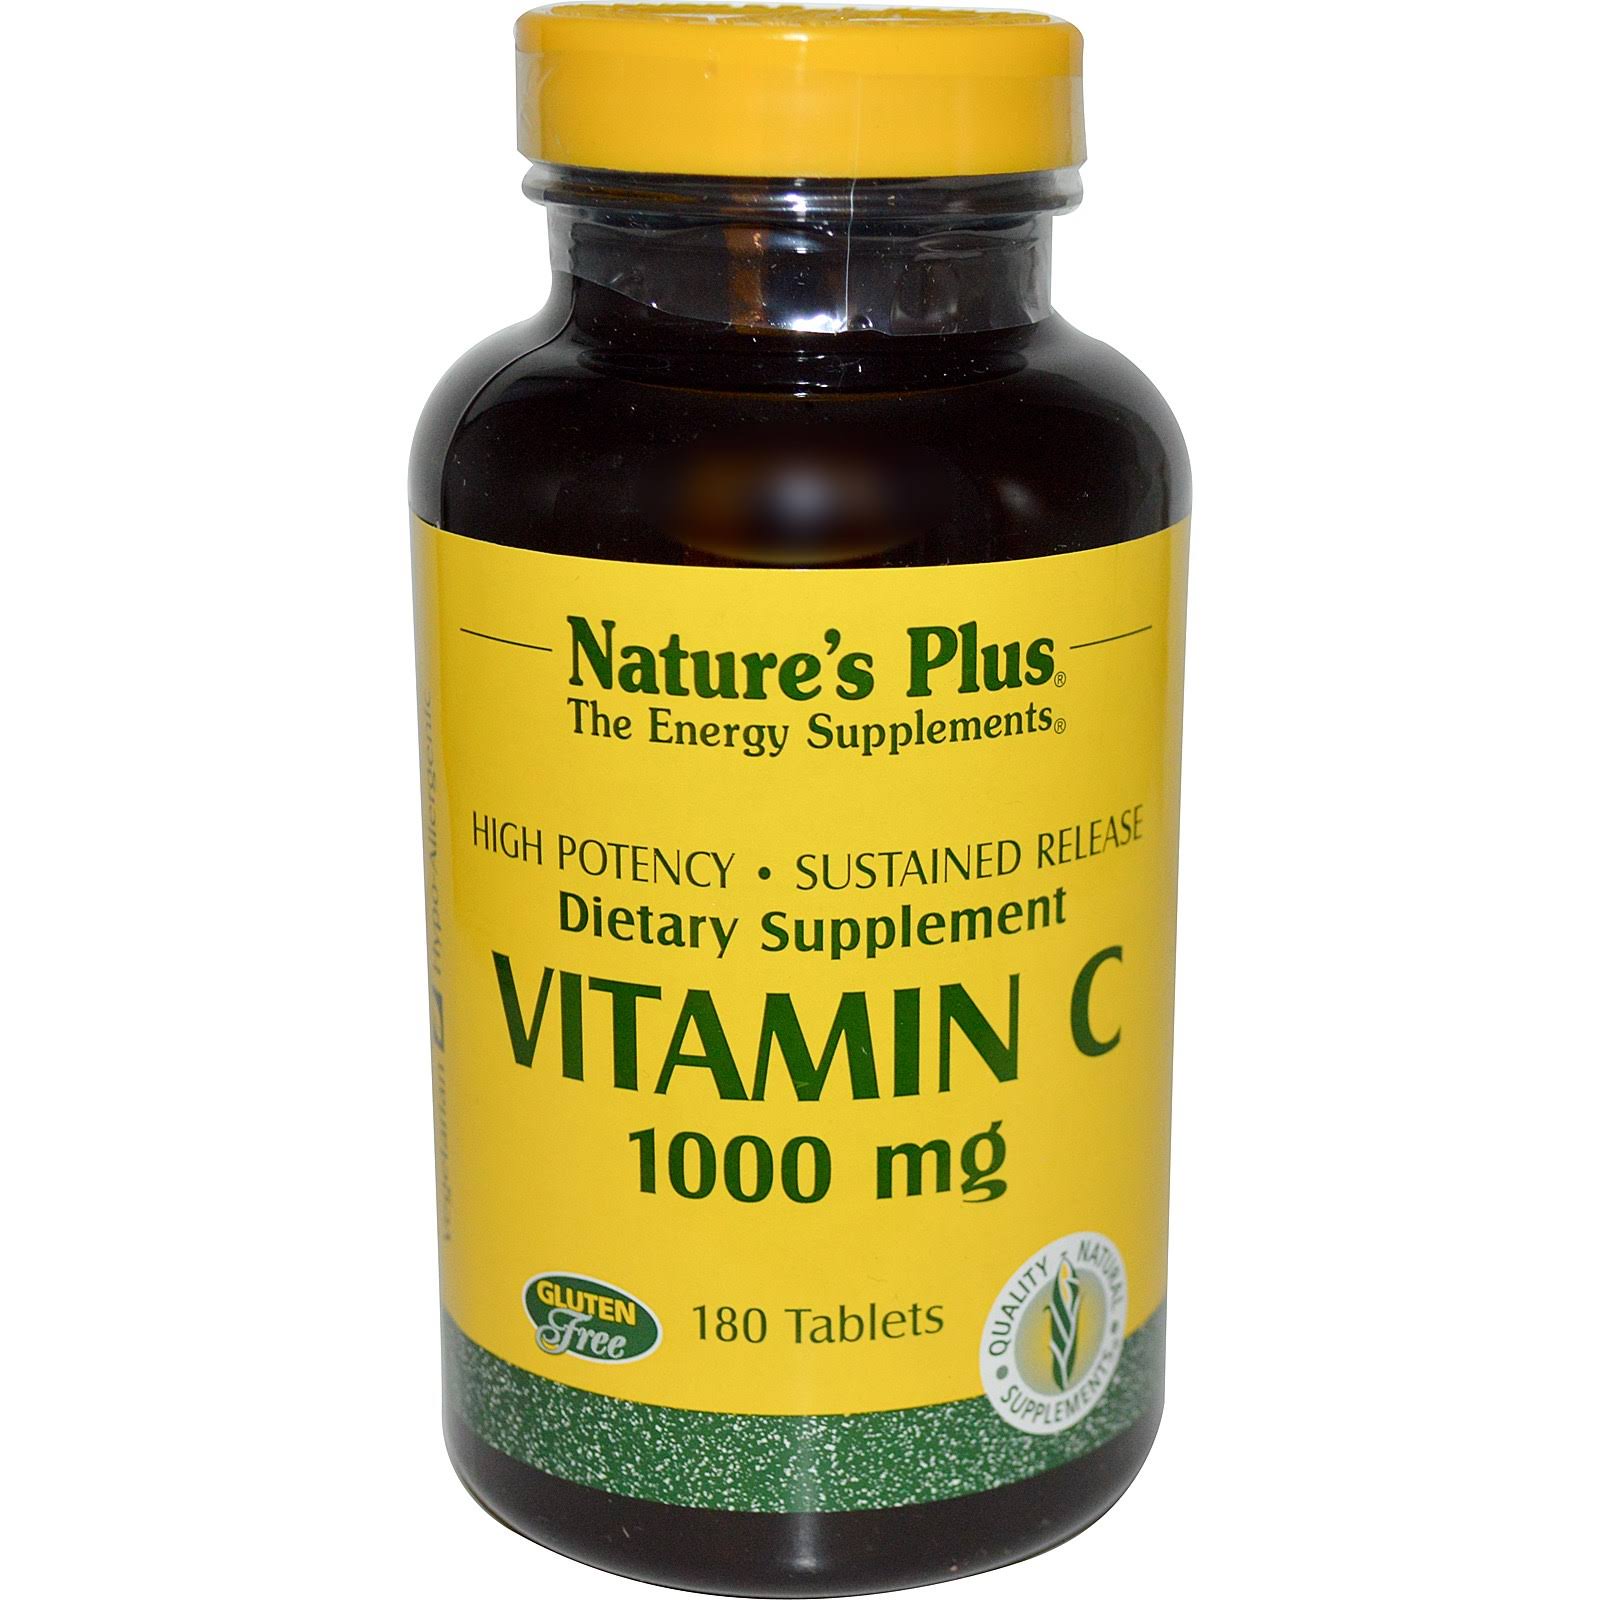 Nature's Plus Vitamin C Dietary Supplement - 1000mg, 180ct